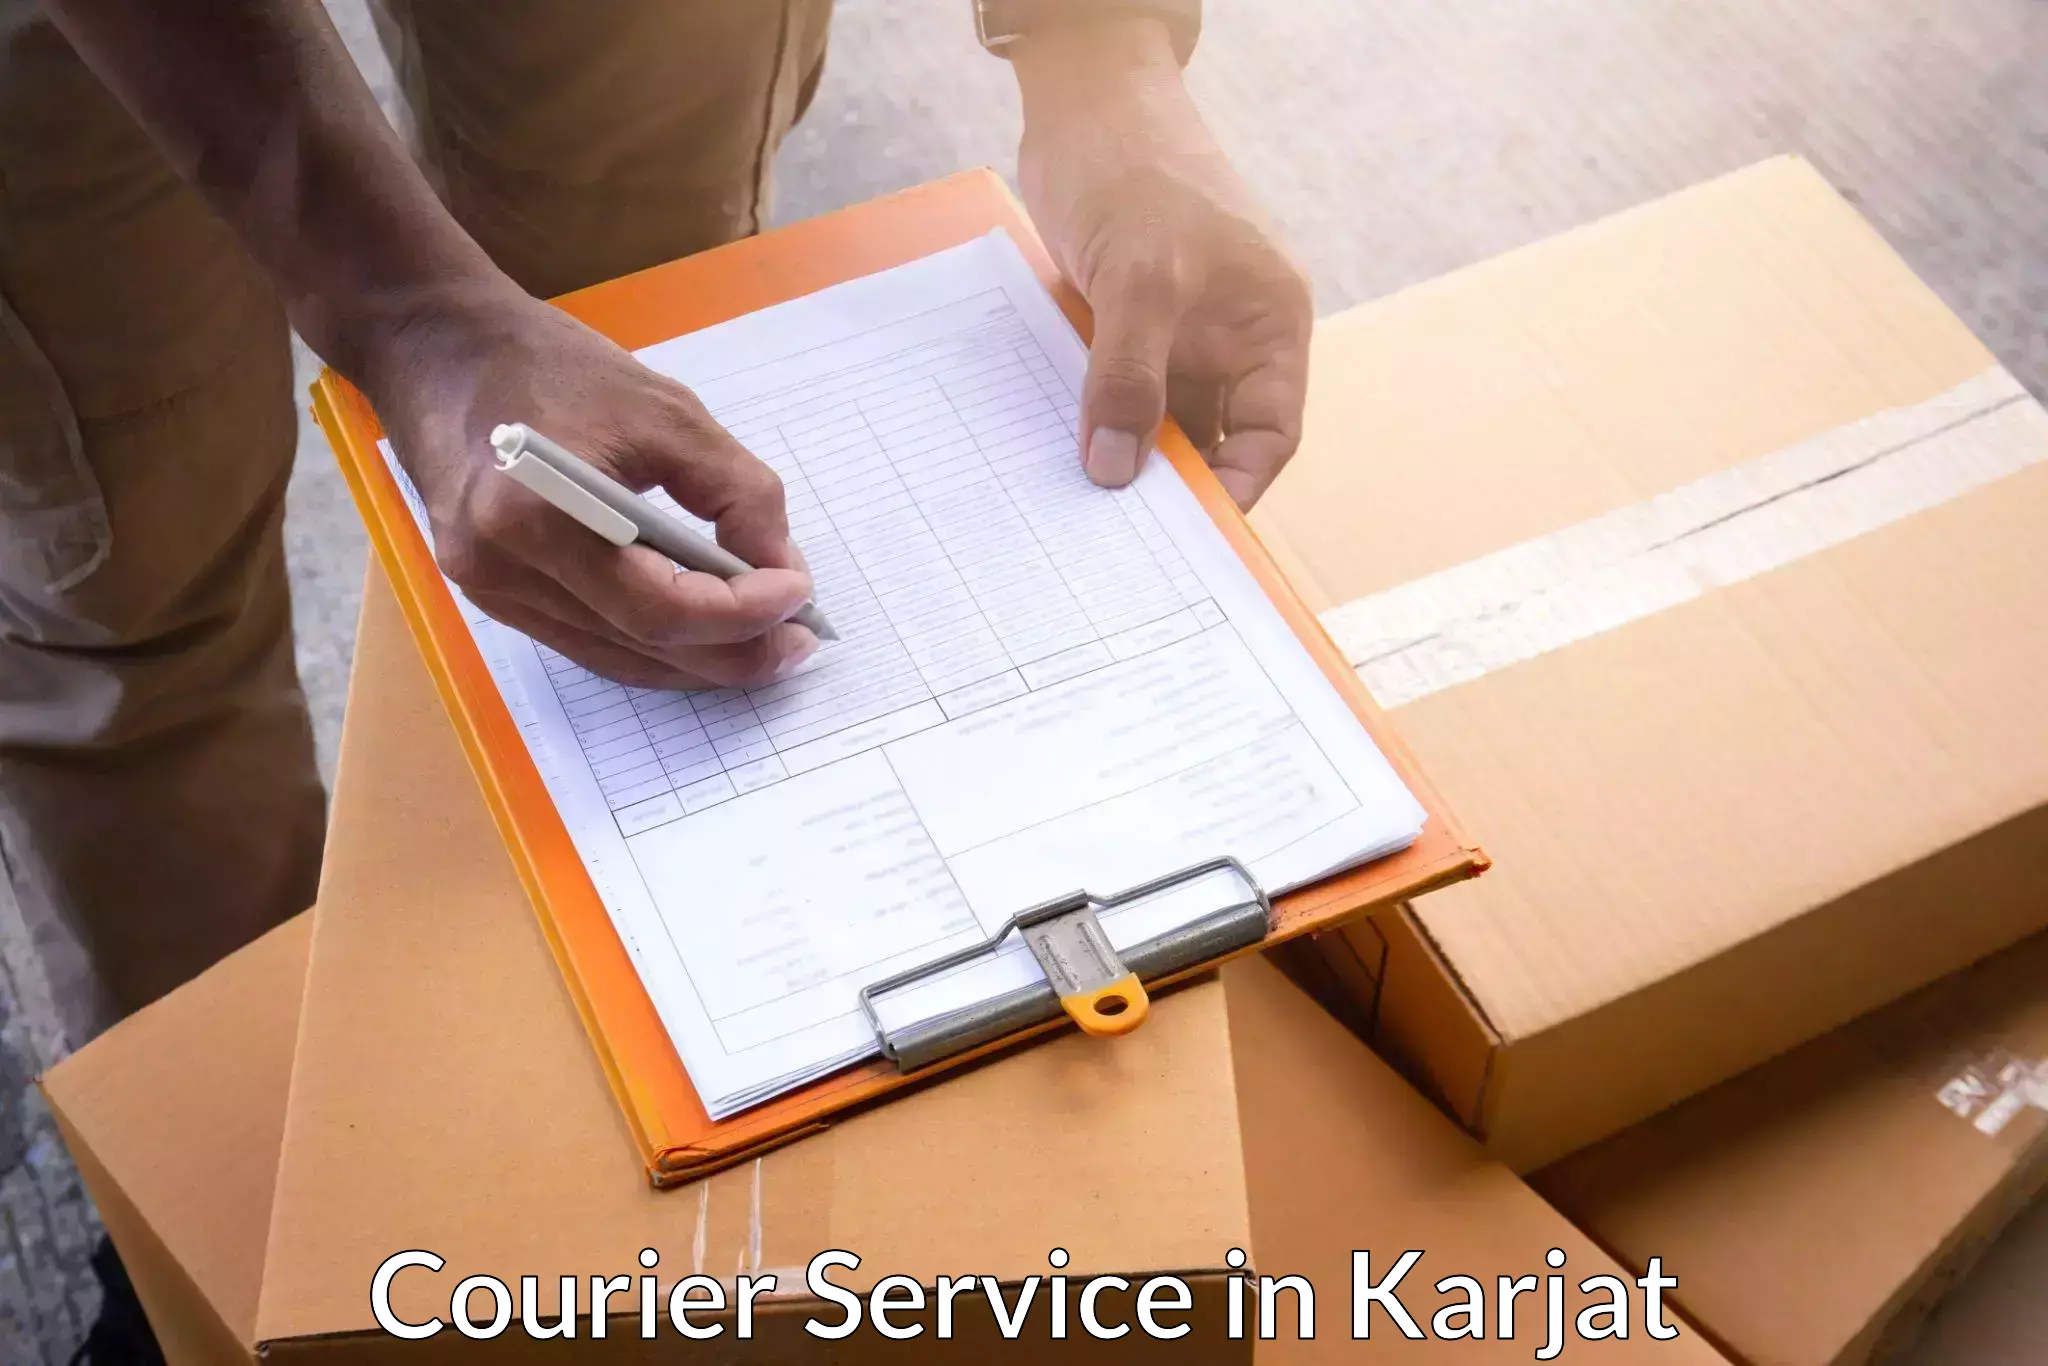 Efficient freight service in Karjat